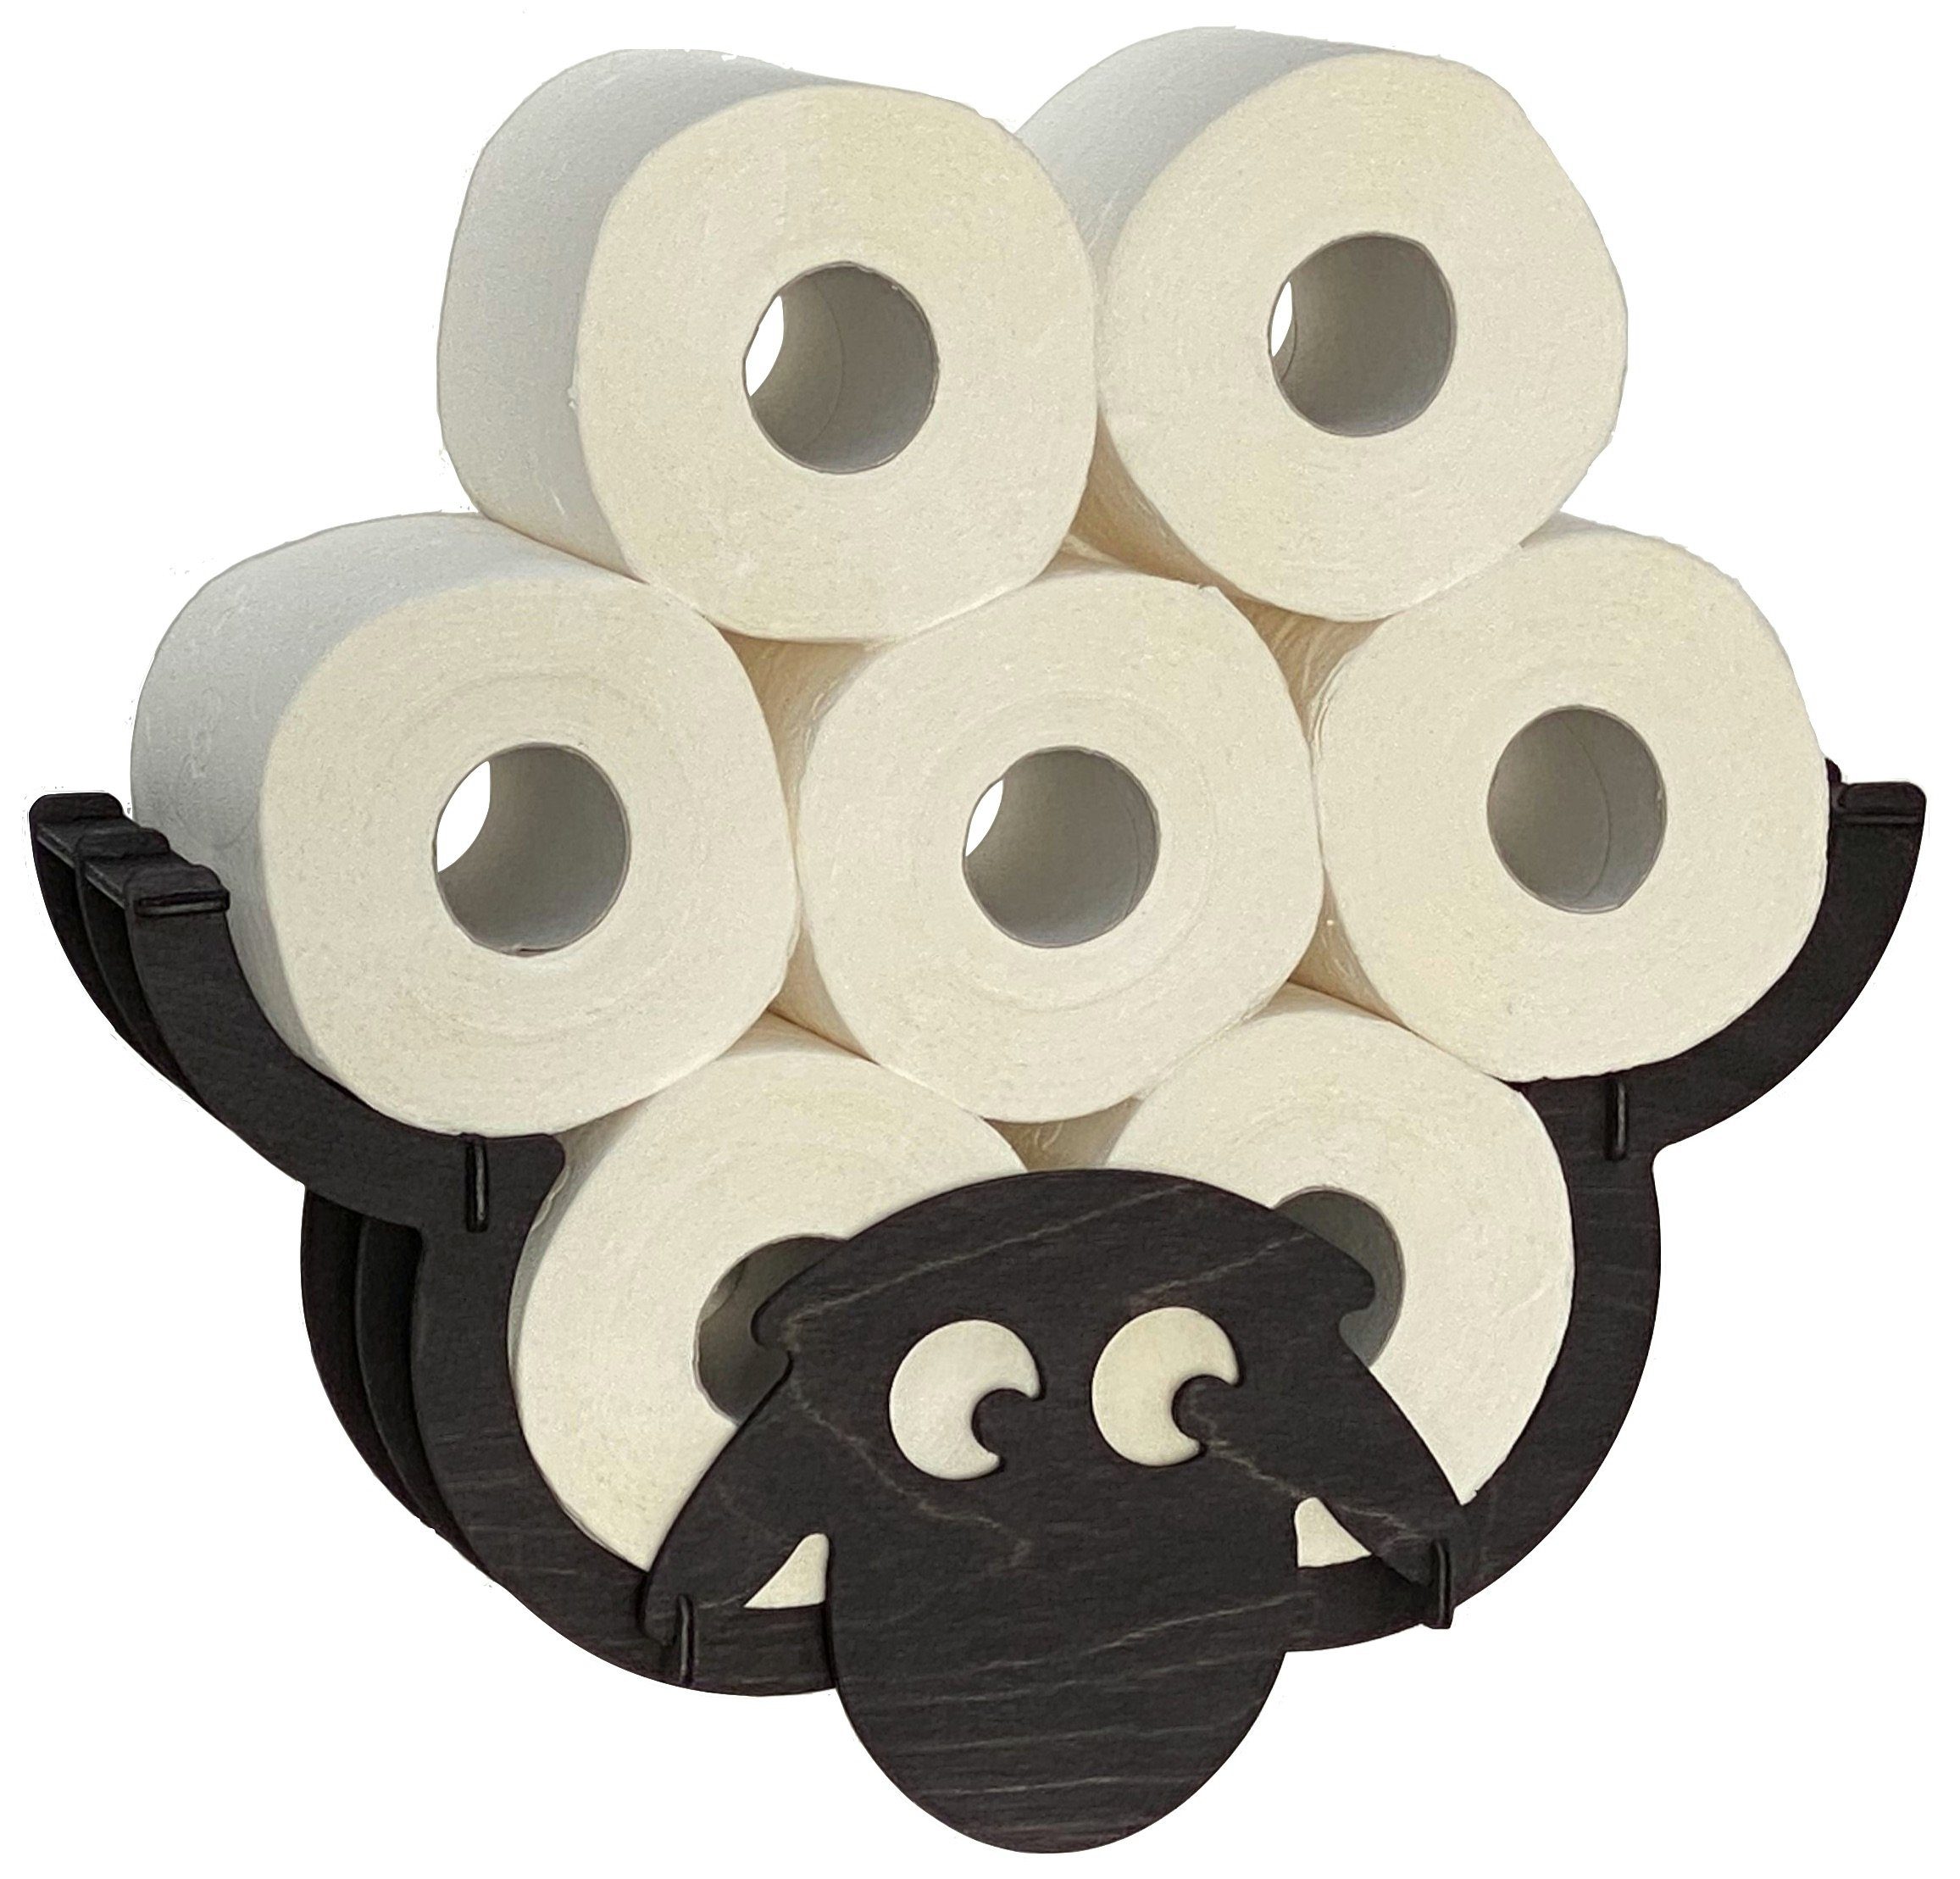 DanDiBo Toilettenpapierhalter »Toilettenpapierhalter Schaf Wand Schwarz  Holz Toilettenrollenhalter WC Rollenhalter Ersatzrollenhalter  Klopapierhalter« online kaufen | OTTO